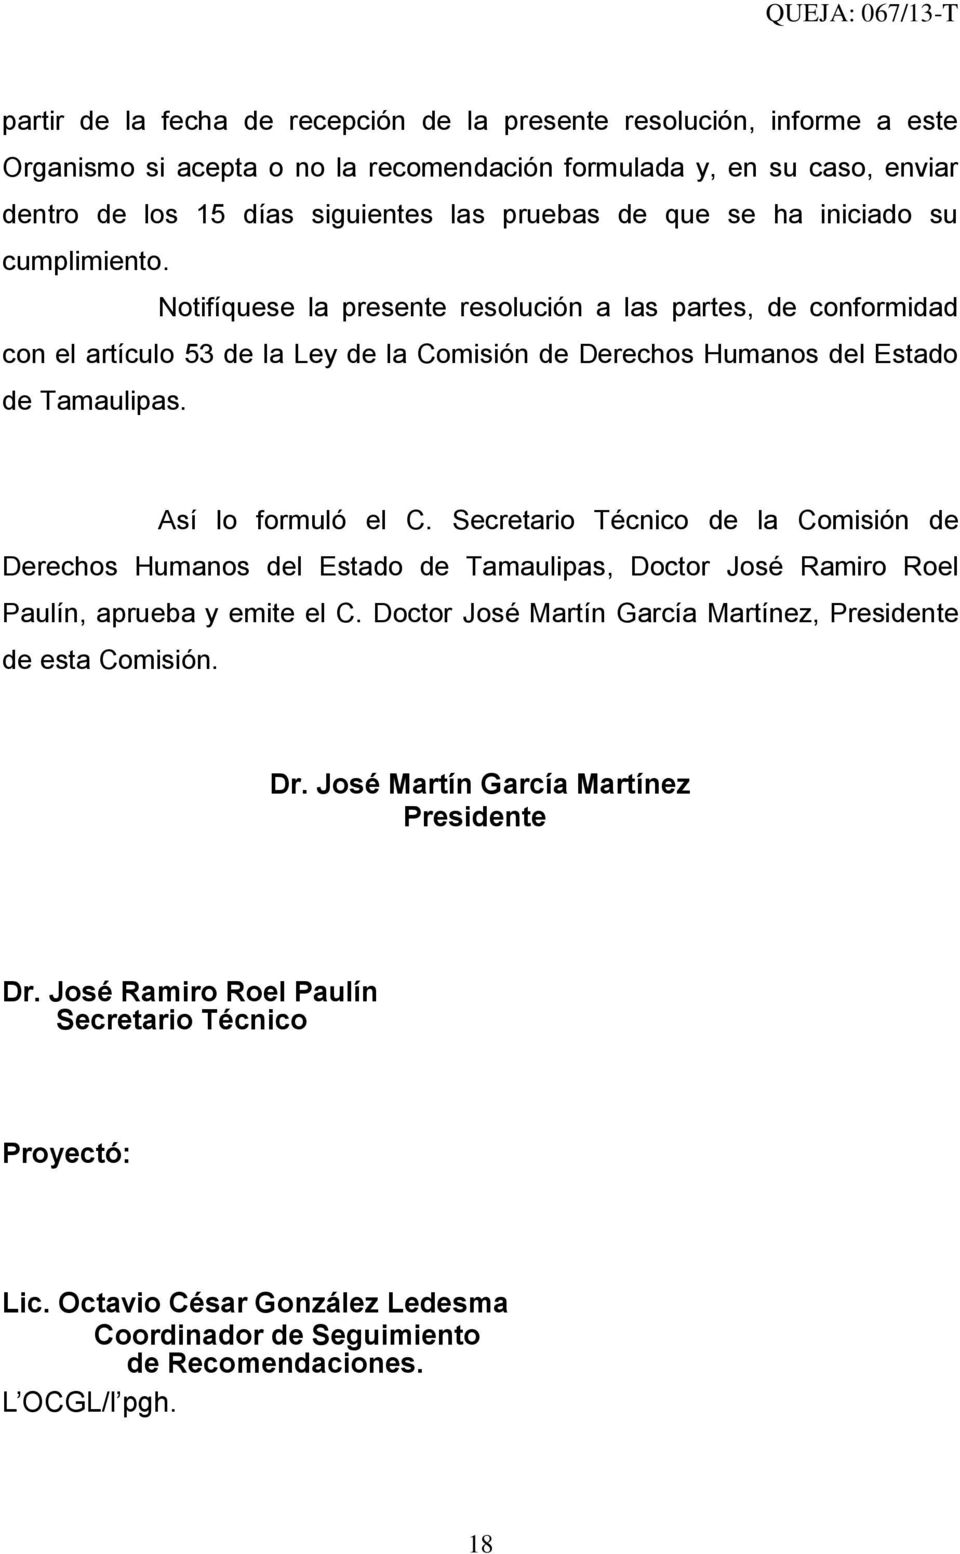 Así lo formuló el C. Secretario Técnico de la Comisión de Derechos Humanos del Estado de Tamaulipas, Doctor José Ramiro Roel Paulín, aprueba y emite el C.